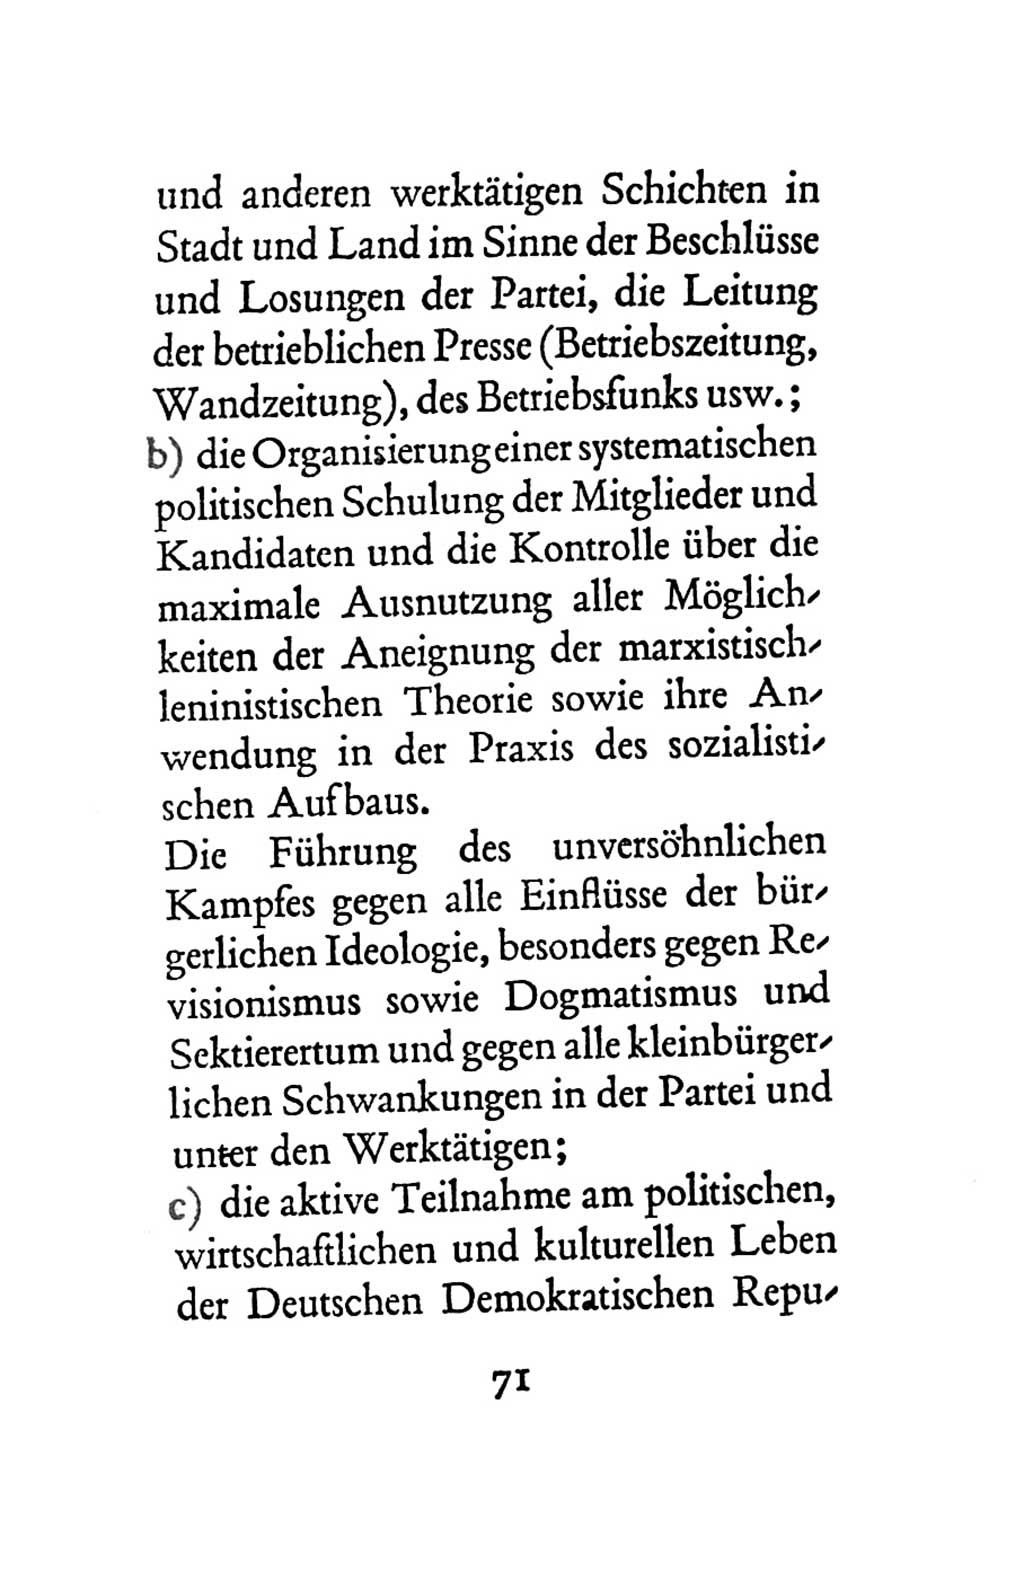 Statut der Sozialistischen Einheitspartei Deutschlands (SED) 1963, Seite 71 (St. SED DDR 1963, S. 71)